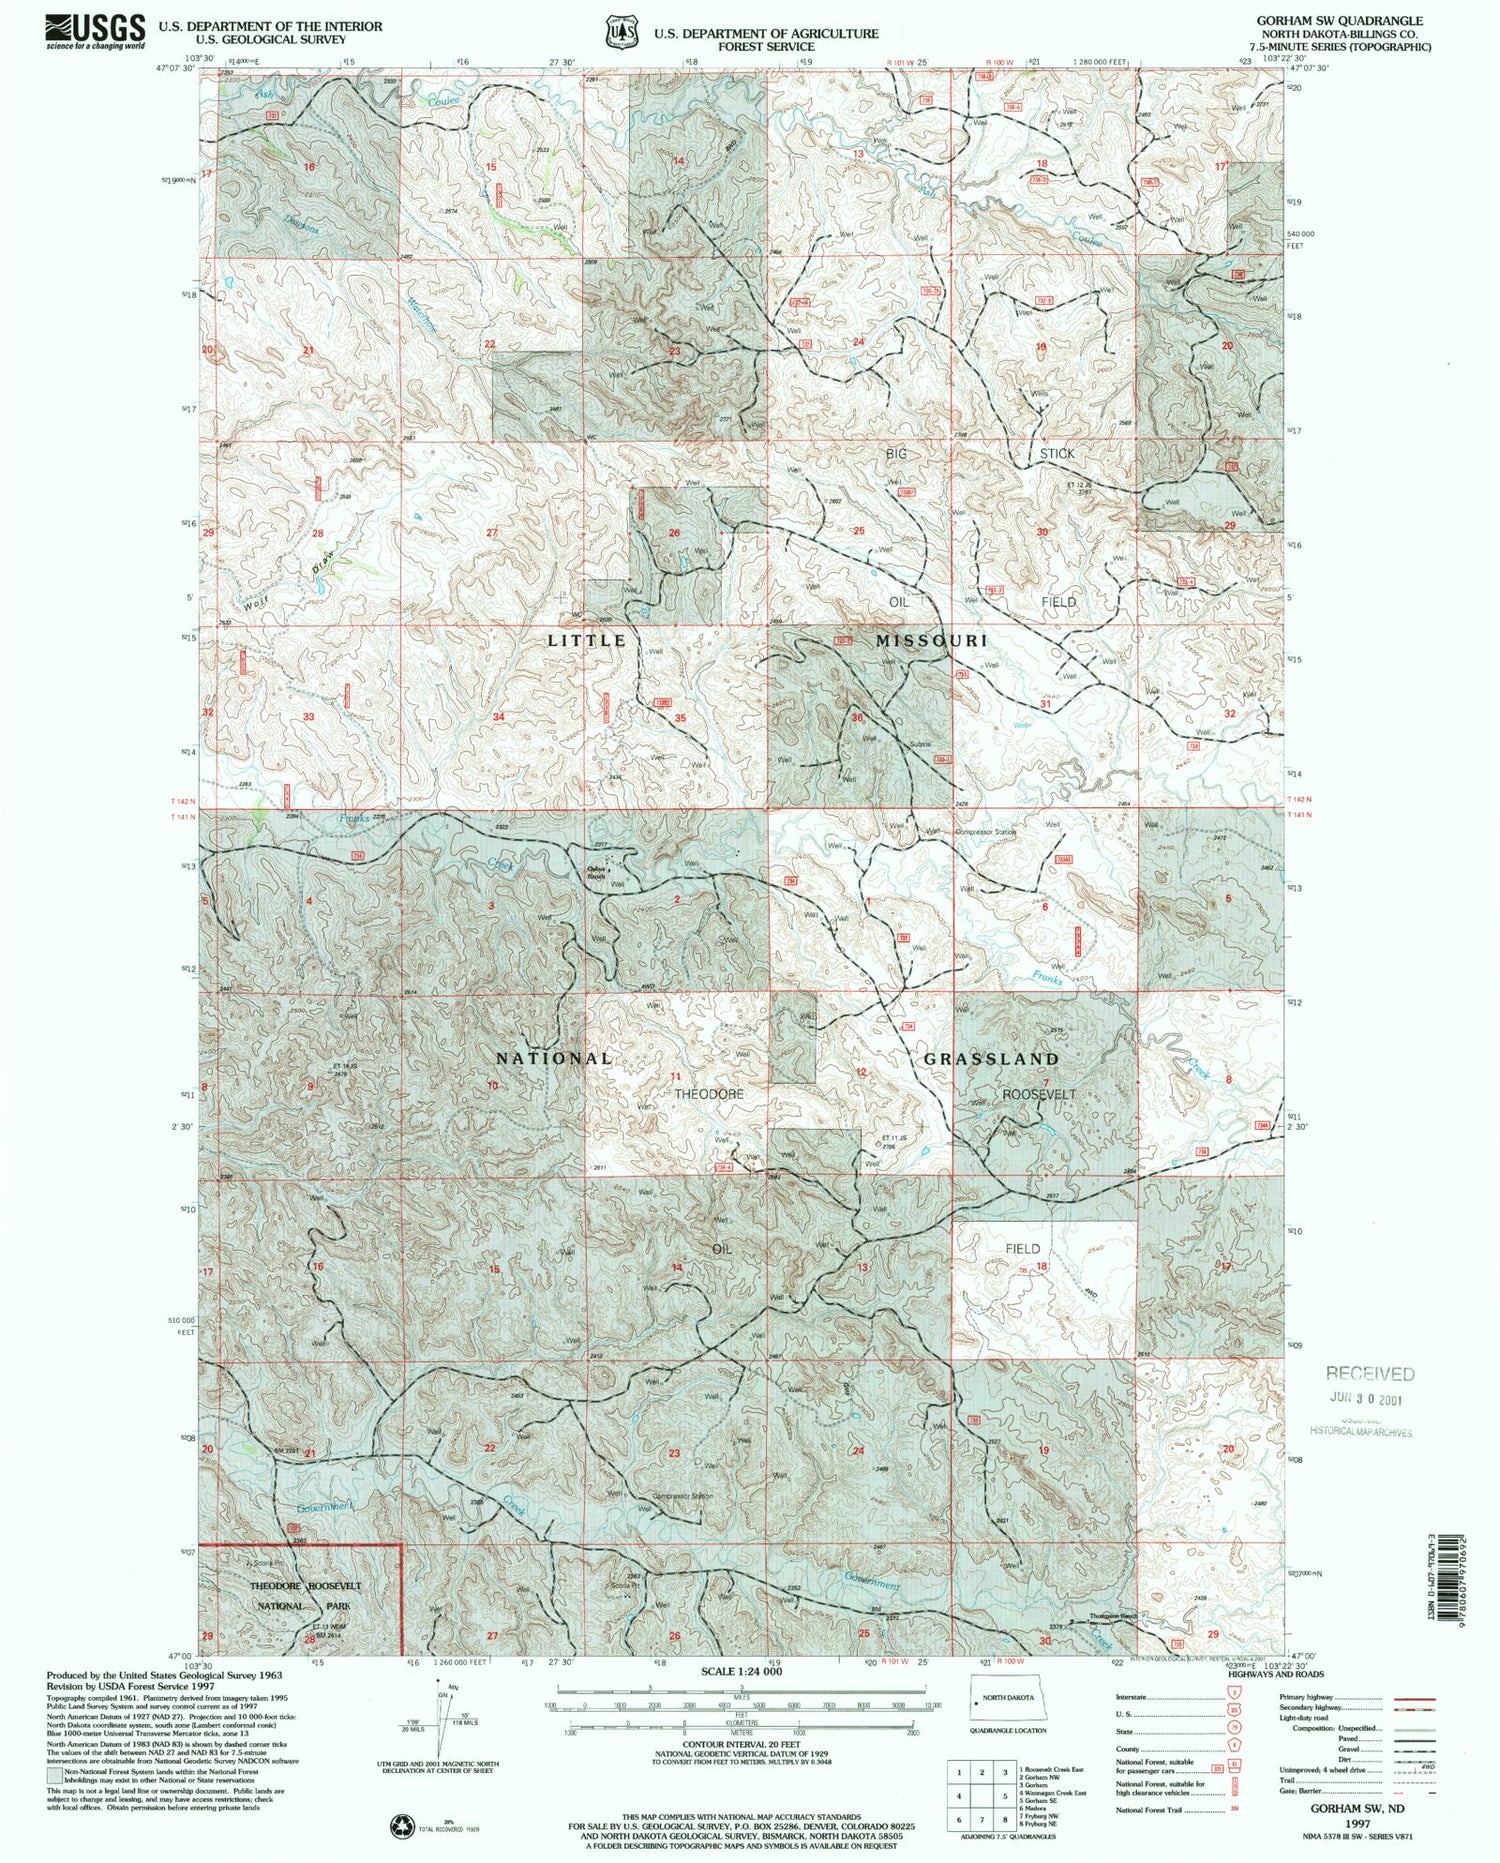 Classic USGS Gorham SW North Dakota 7.5'x7.5' Topo Map Image